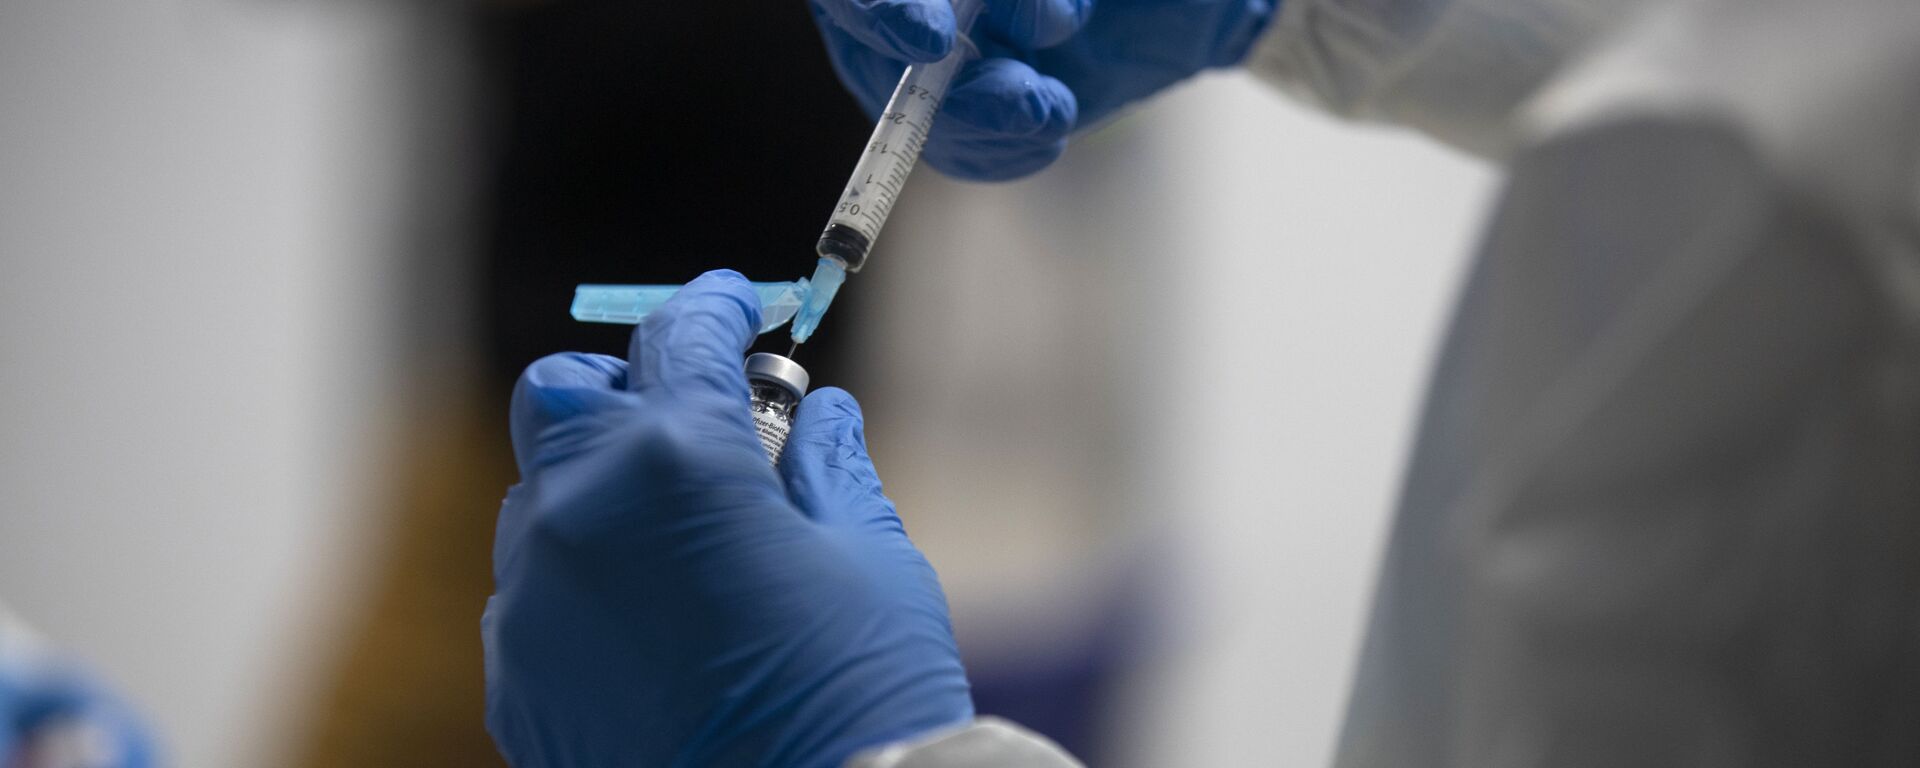 Un trabajador de la salud prepara la vacuna Pfizer-BioNTech COVID-19. España, 12 de enero de 2021 - Sputnik Mundo, 1920, 05.02.2021